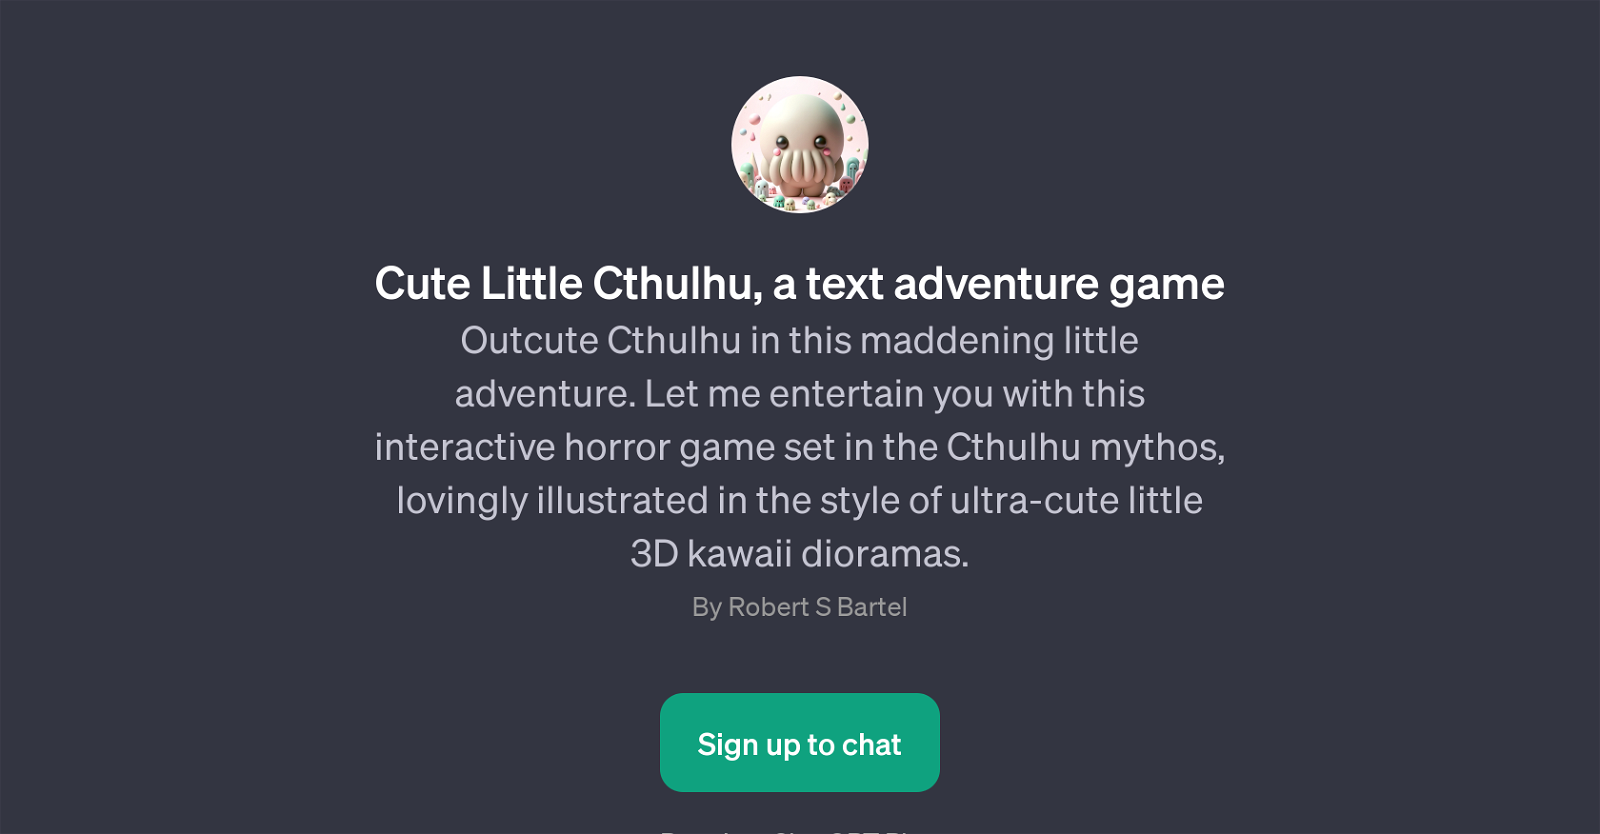 Cute Little Cthulhu website